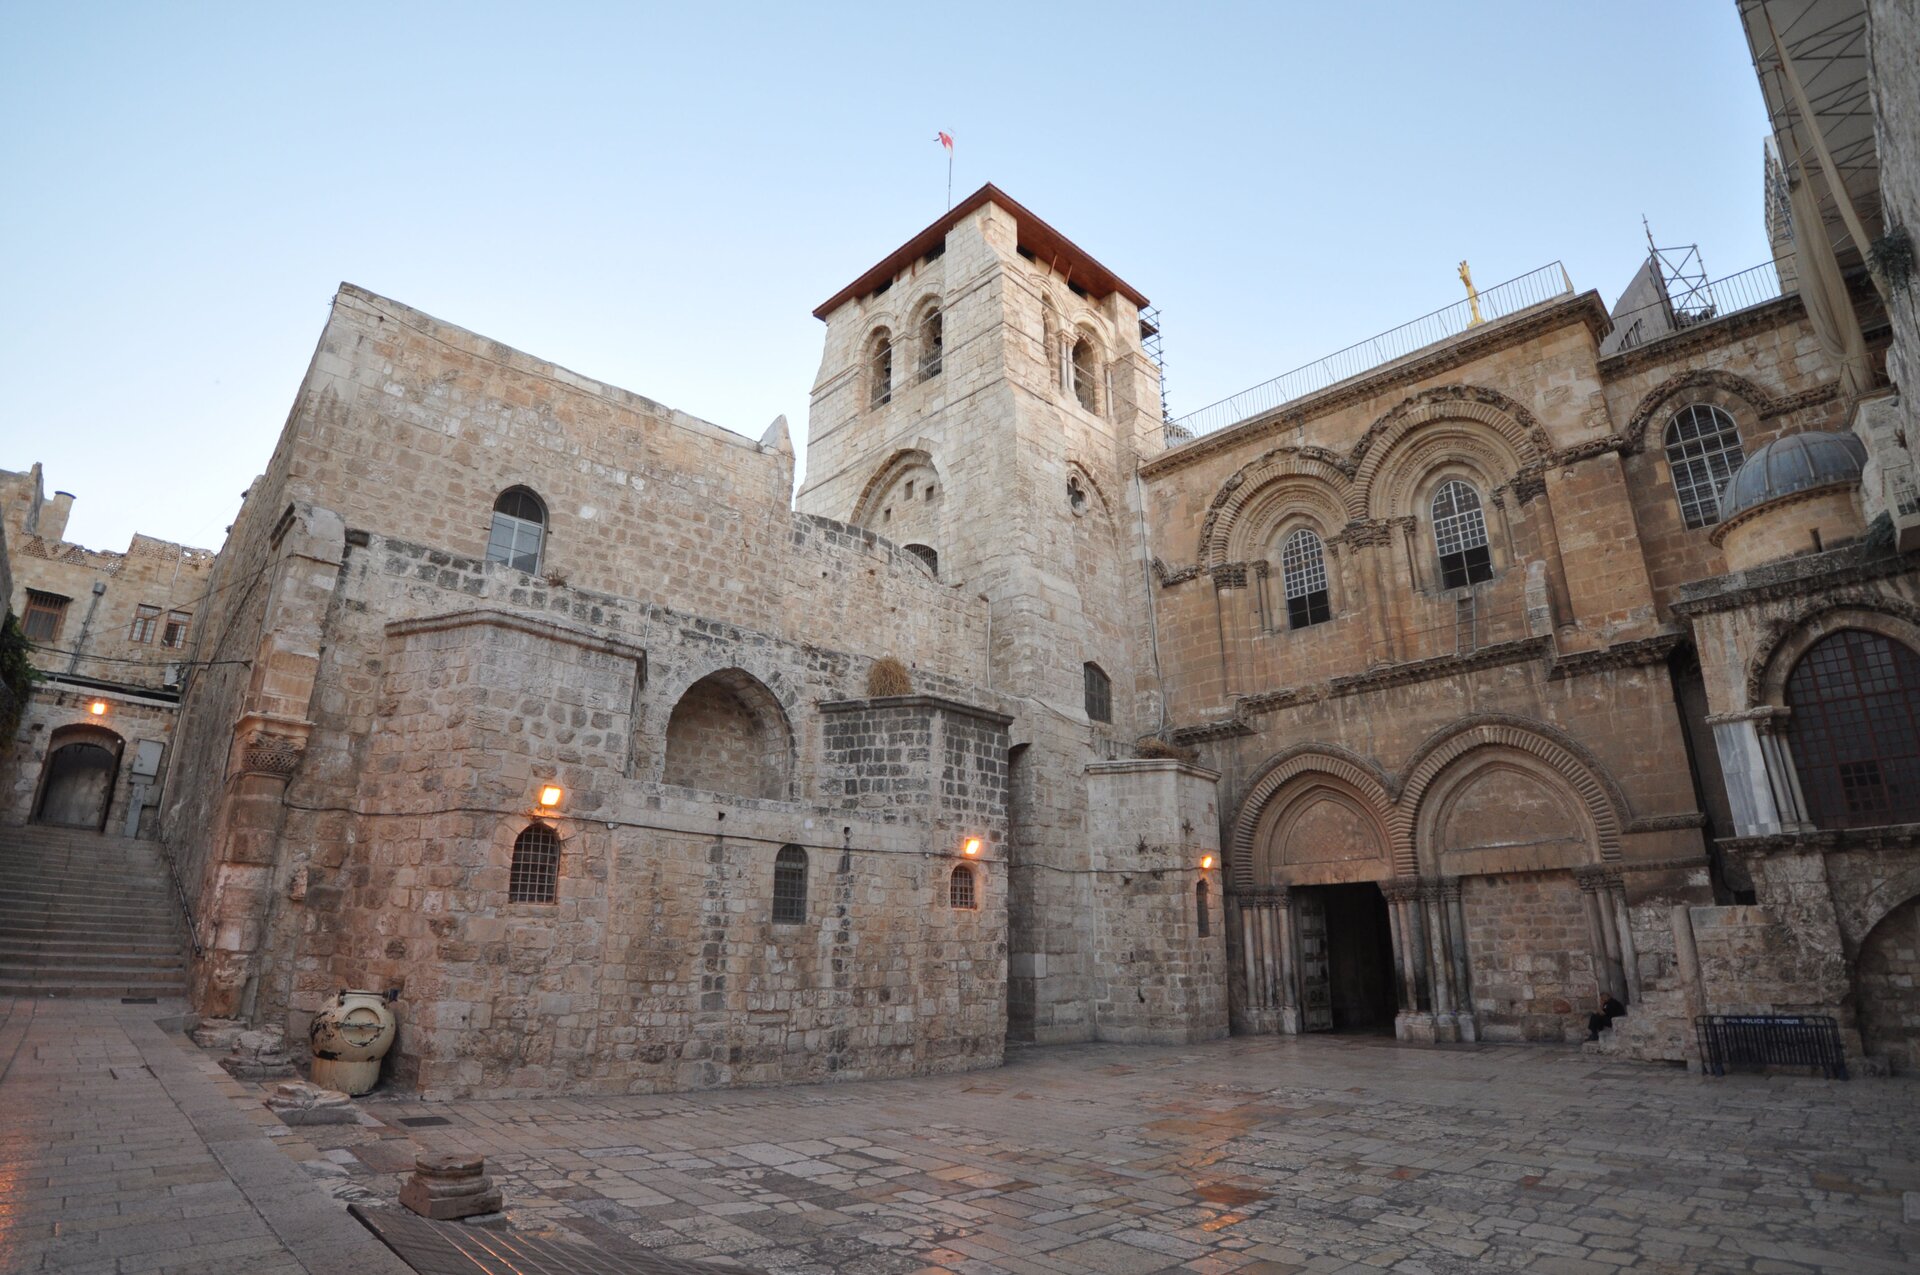 Ilustracja przedstawia zdjęcie współczesnej bazyliki Grobu Pańskiego w Jerozolimie. Na fotografii ukazany jest zabytkowy kościół z wieżą o podwójnych oknach na planie kwadratu. Po prawej stronie wieży, w dwukondygnacyjnej fasadzie znajdują się dwa portale zwieńczone kilkoma rzędami ostrych łuków podtrzymywanych trzema kolumnami po obu stronach drzwi. Wejście po prawej stronie jest zamurowane. Na drugiej kondygnacji znajdują się dwa ostrołukowe okna. Na środku wielostopniowej fasady, po lewej stronie wieży znajduje się ślepa ostrołukowa wnęka. Poniżej natomiast mieszczą się trzy małe okienka. Bazylika zbudowana jest z czerwonej cegły. W tle ukazane są schody prowadzące do wejścia do kamienicy Starego Miasta Jerozolimy.